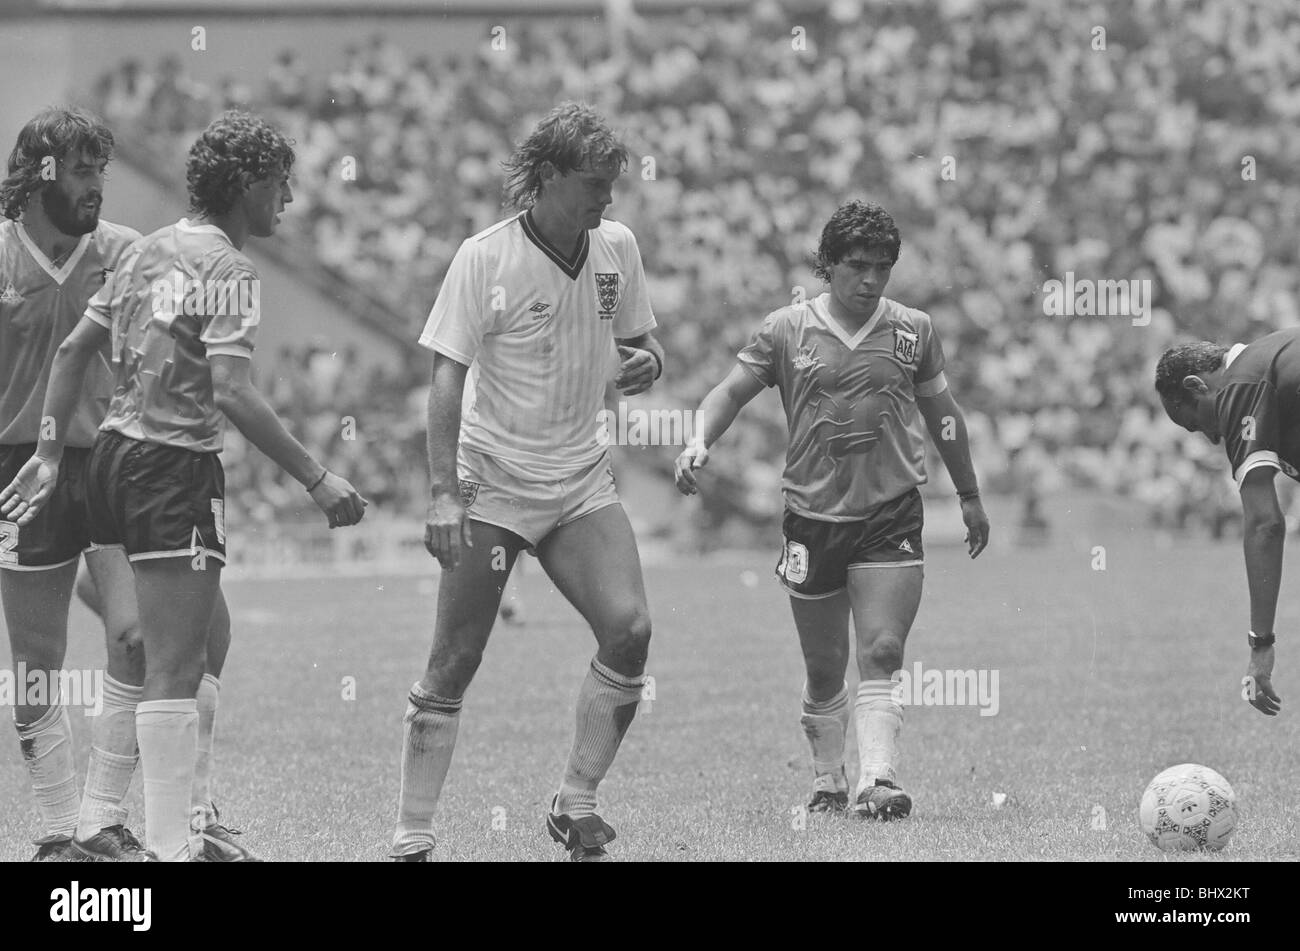 Coppa del mondo Messico '86 Inghilterra v Argentina azione più ventole a partita. Le immagini non equilibrata o pulito solo per scopi di valutazione.Caption locale *** la mano di Dio corrispondono Foto Stock